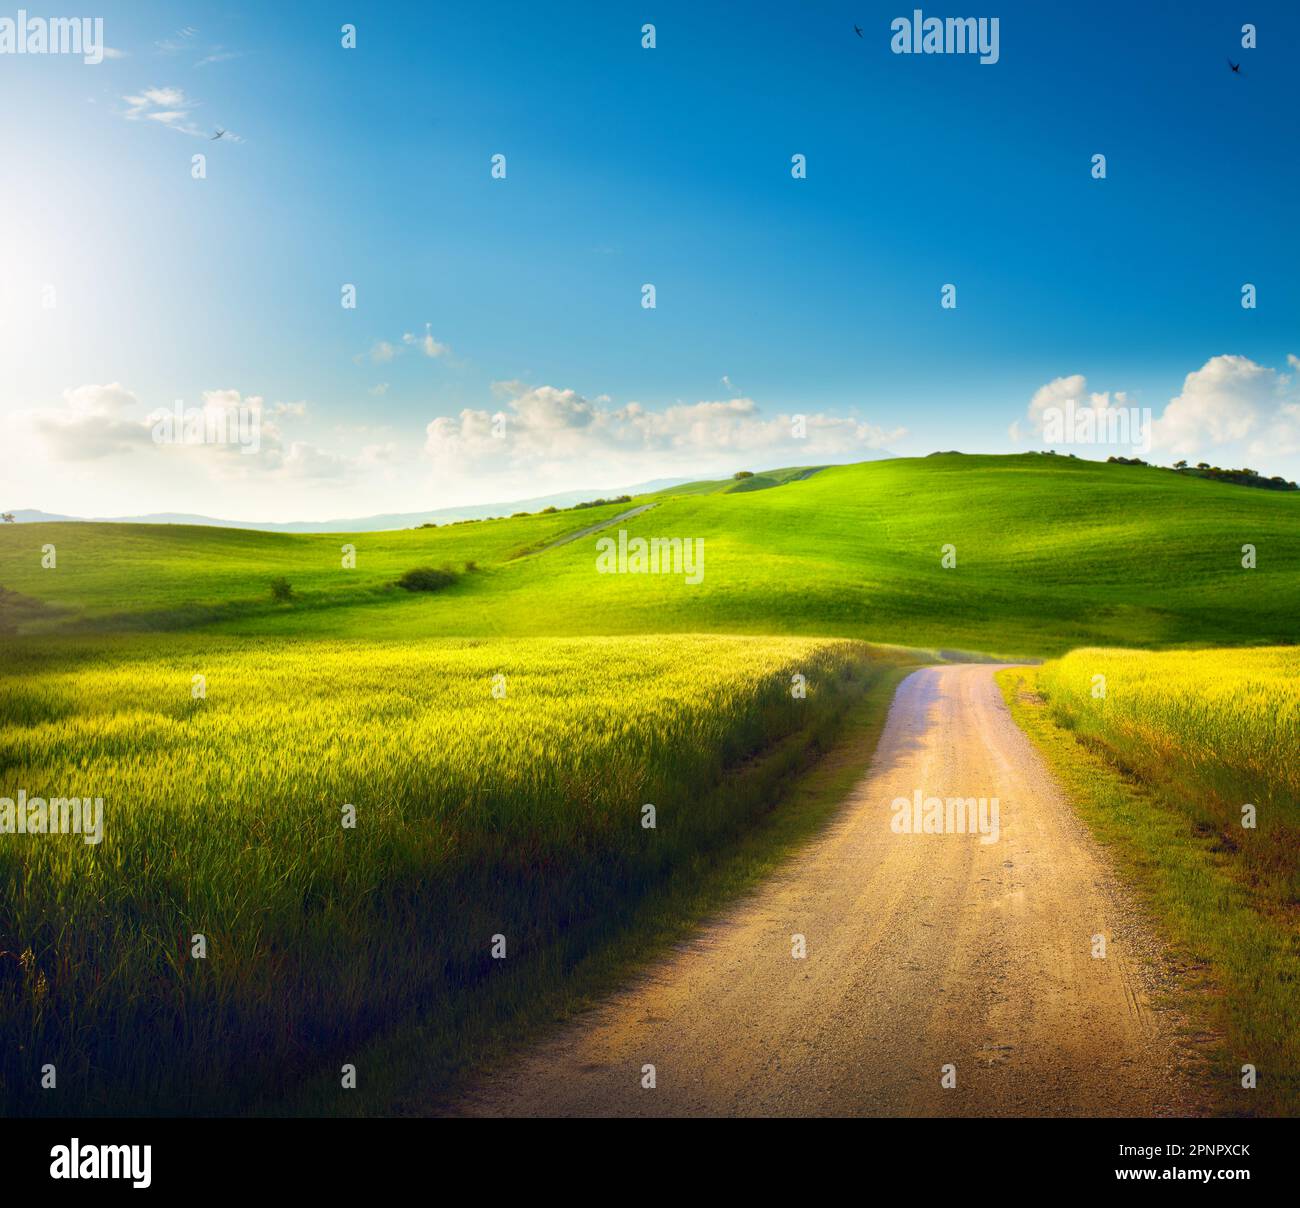 Campagna Italiana Panorama di campo verde estivo con strada sterrata e cielo azzurro nuvoloso. Splendido paesaggio rurale estivo italiano; Foto Stock